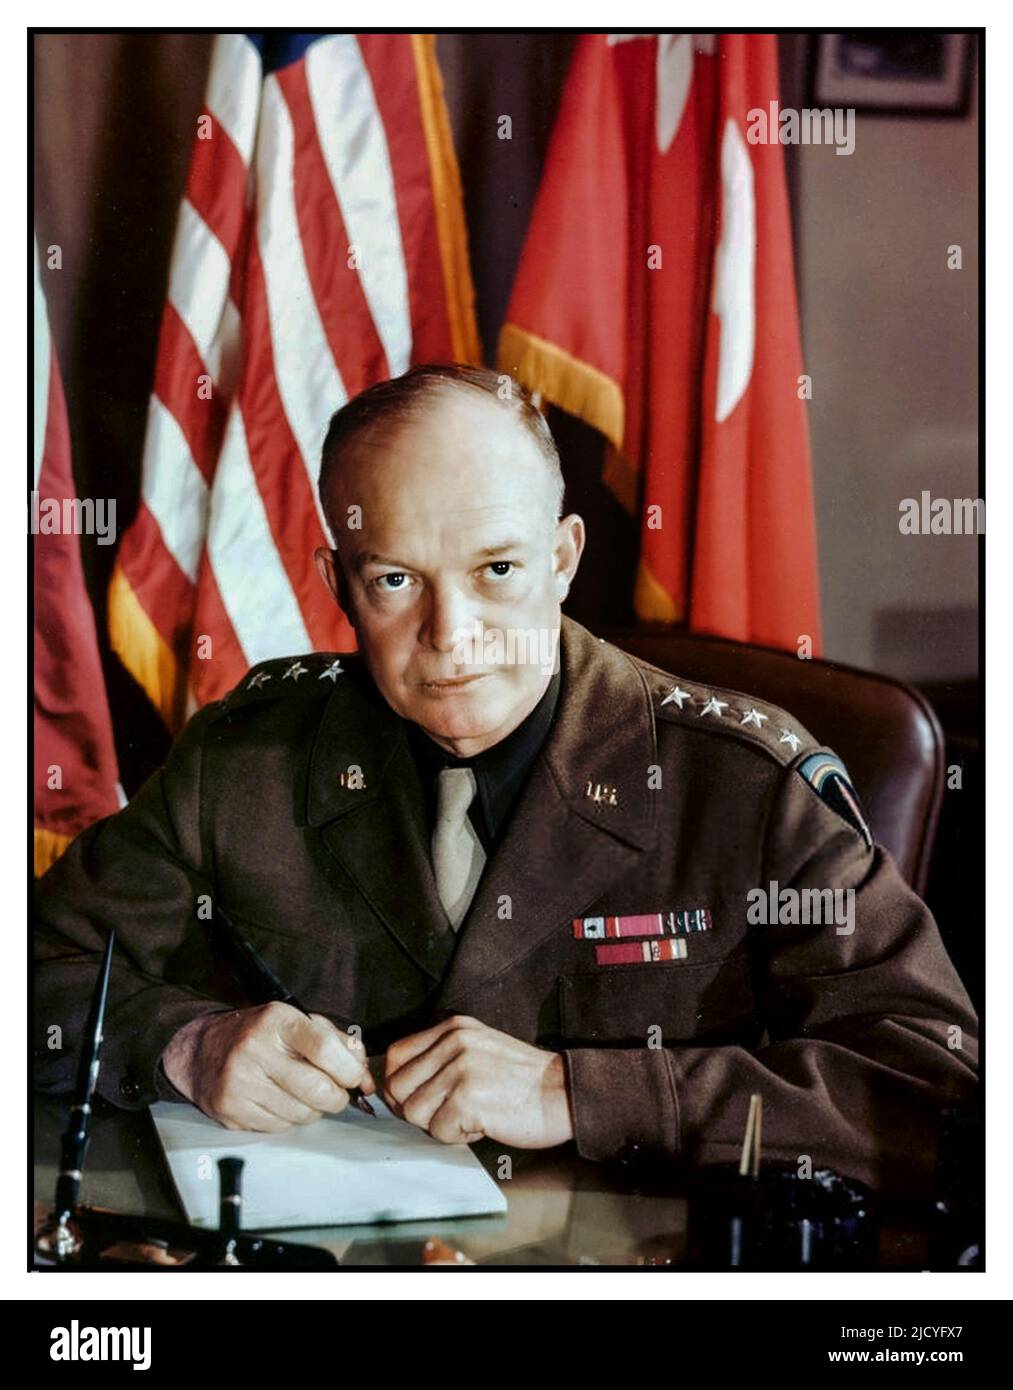 EISENHOWER WW2 Porträt des amerikanischen Militärkommandanten (und zukünftigen US-Präsidenten) General Dwight D. Eisenhower in Militäruniform (1890 - 1969), während er am 1943. Dezember an seinem Schreibtisch im Hauptquartier der Alliierten Kommandos sitzt. Supreme Allied Commander World war II Stockfoto